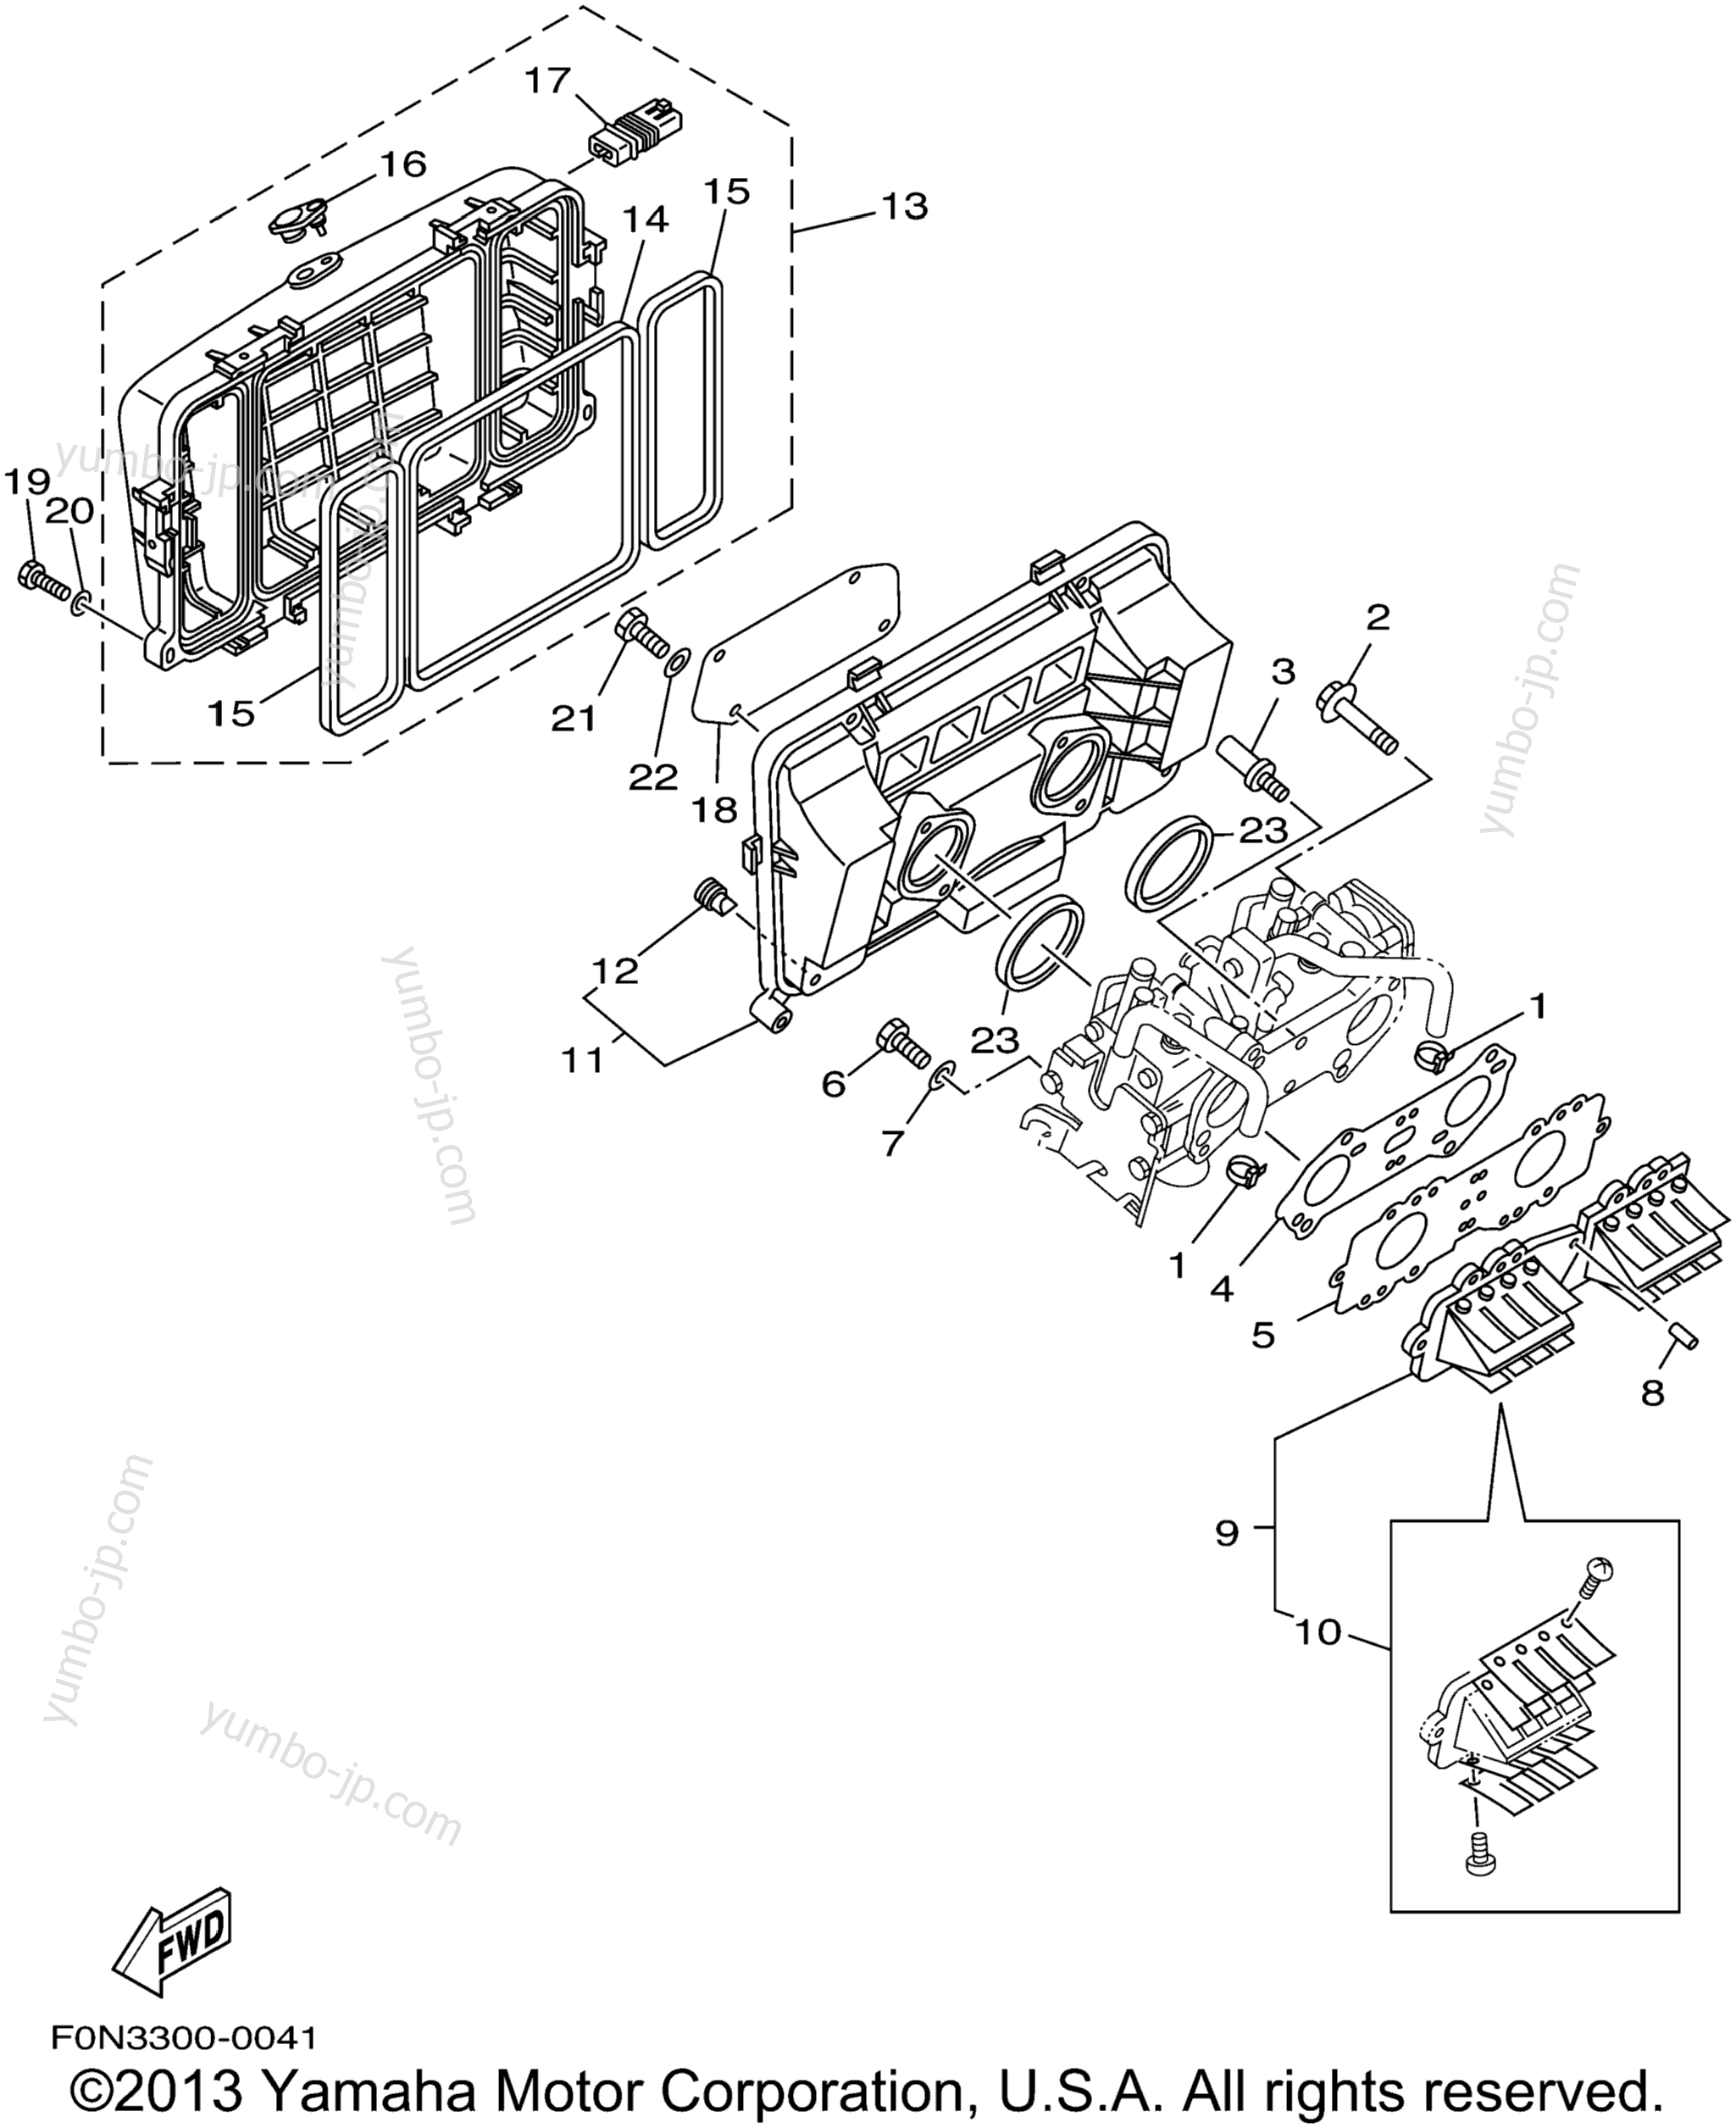 Intake для гидроциклов YAMAHA GP800R (GP800AZ) 2001 г.